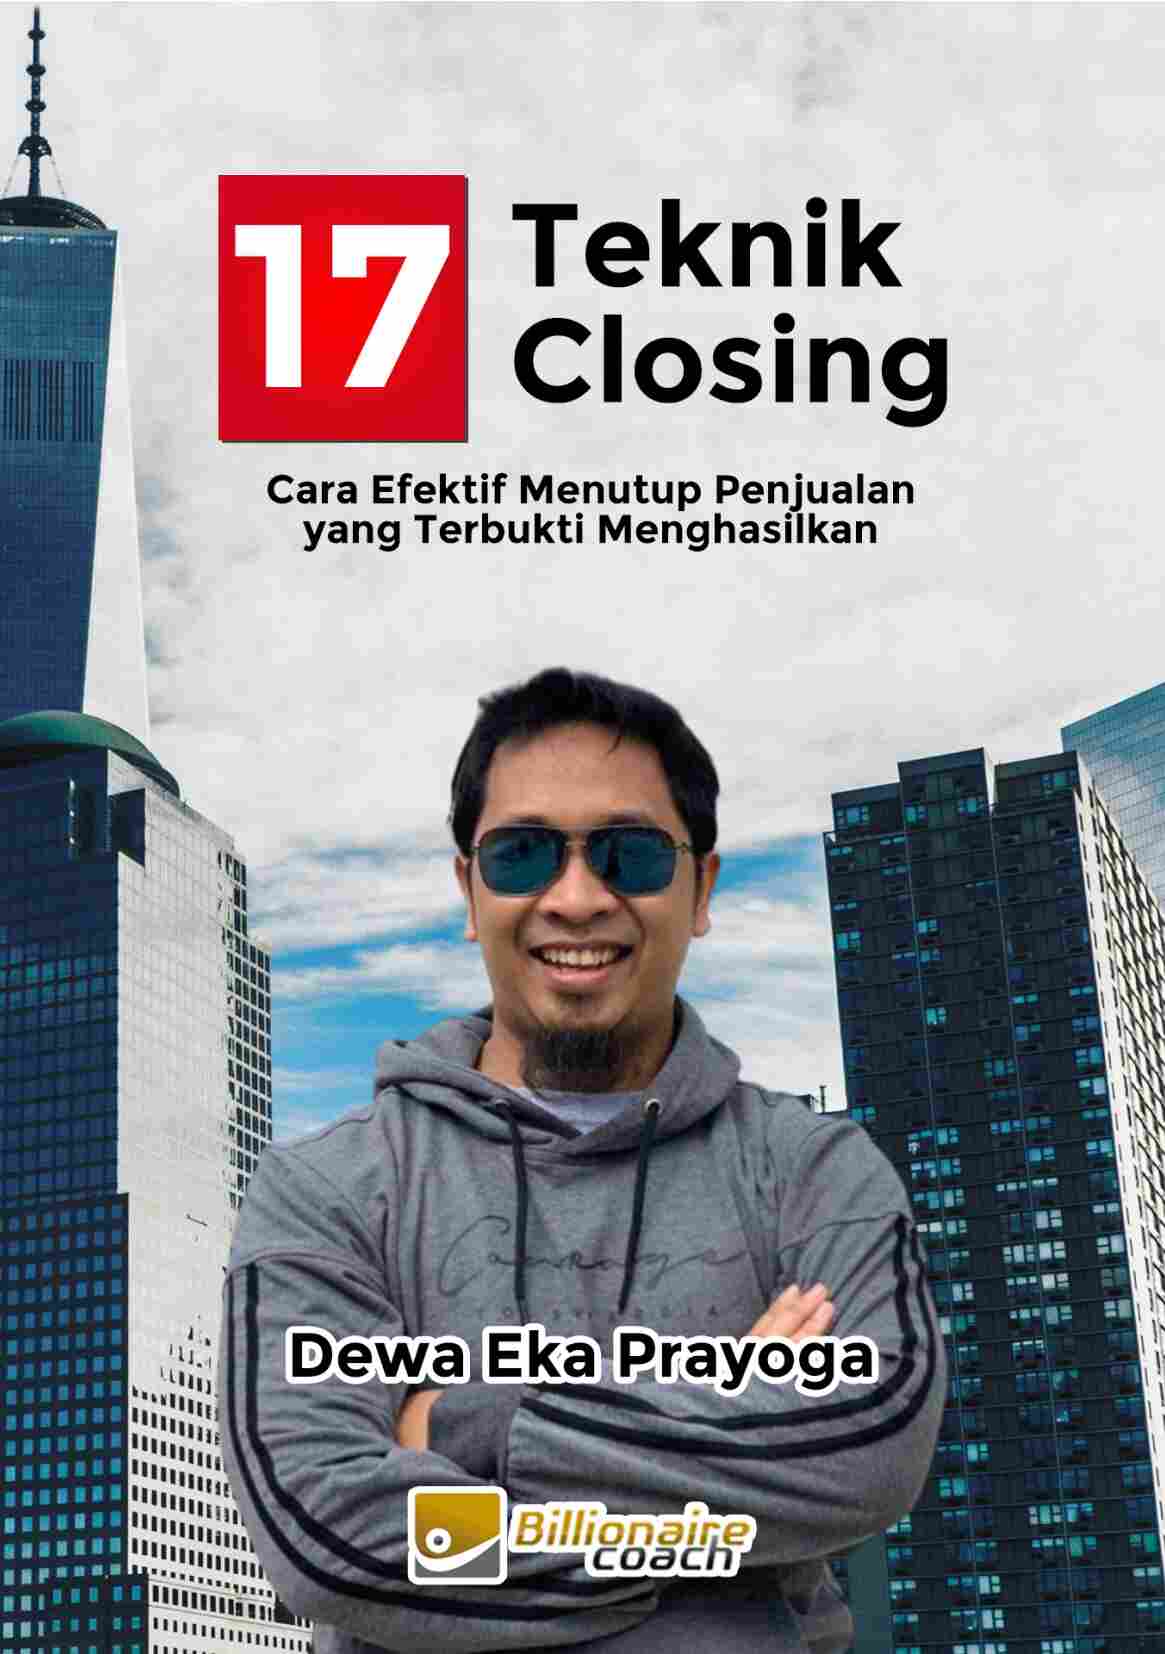 17-teknik-closing